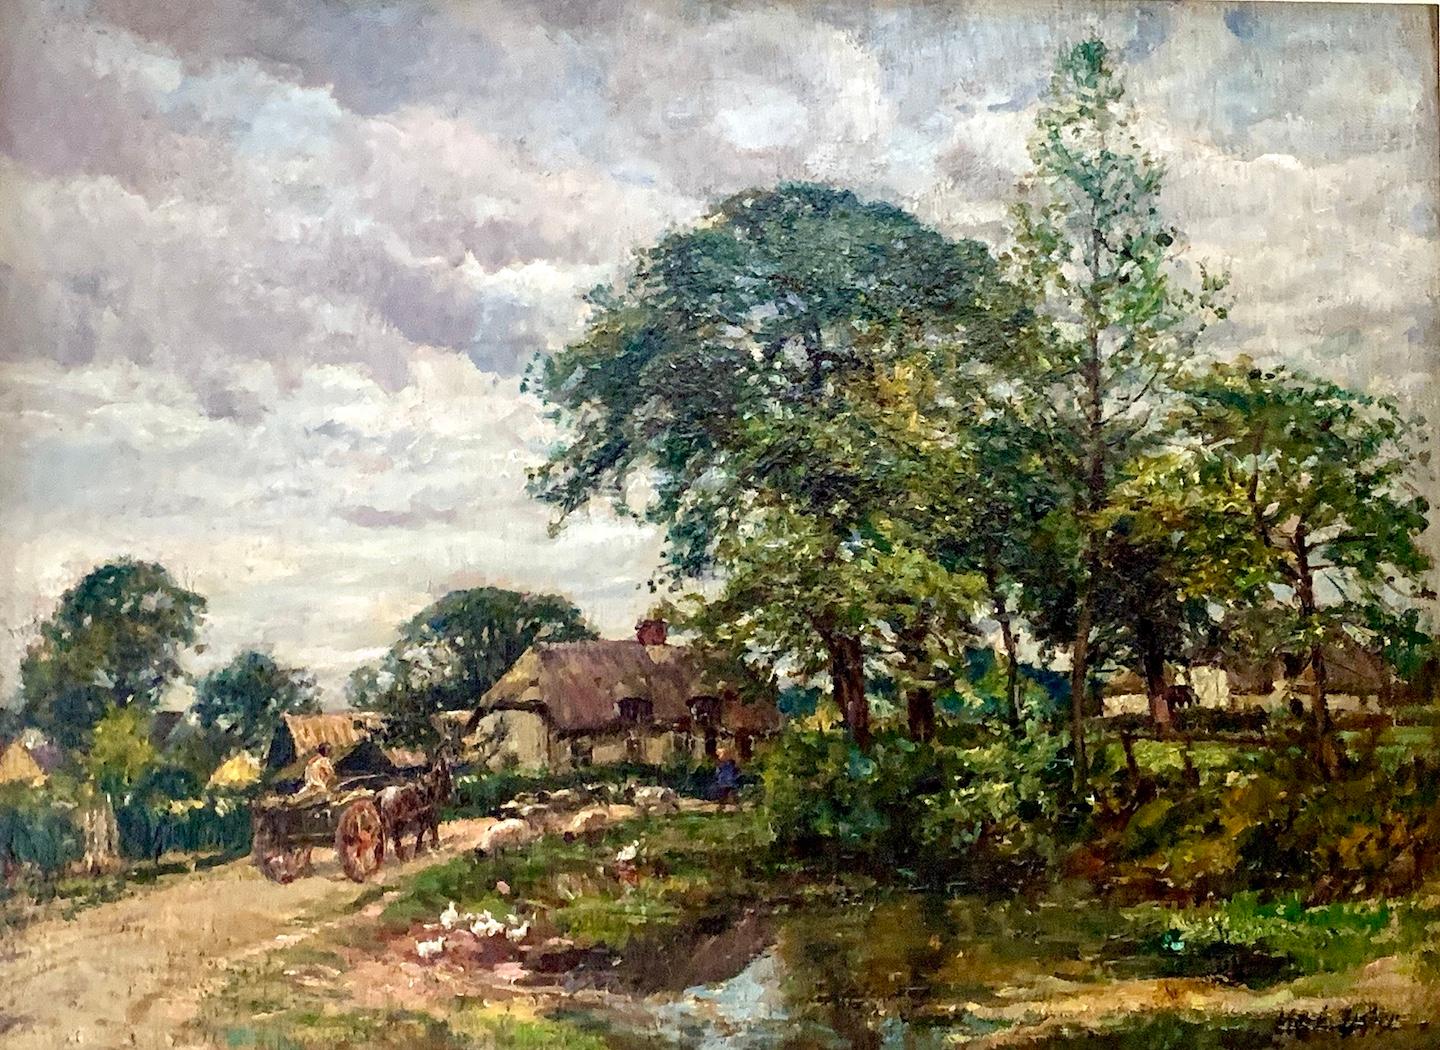 Impressionistische Landschaft des 9. Jahrhunderts mit Pferd und Wagen in einem Dorf – Painting von William Mark Fisher